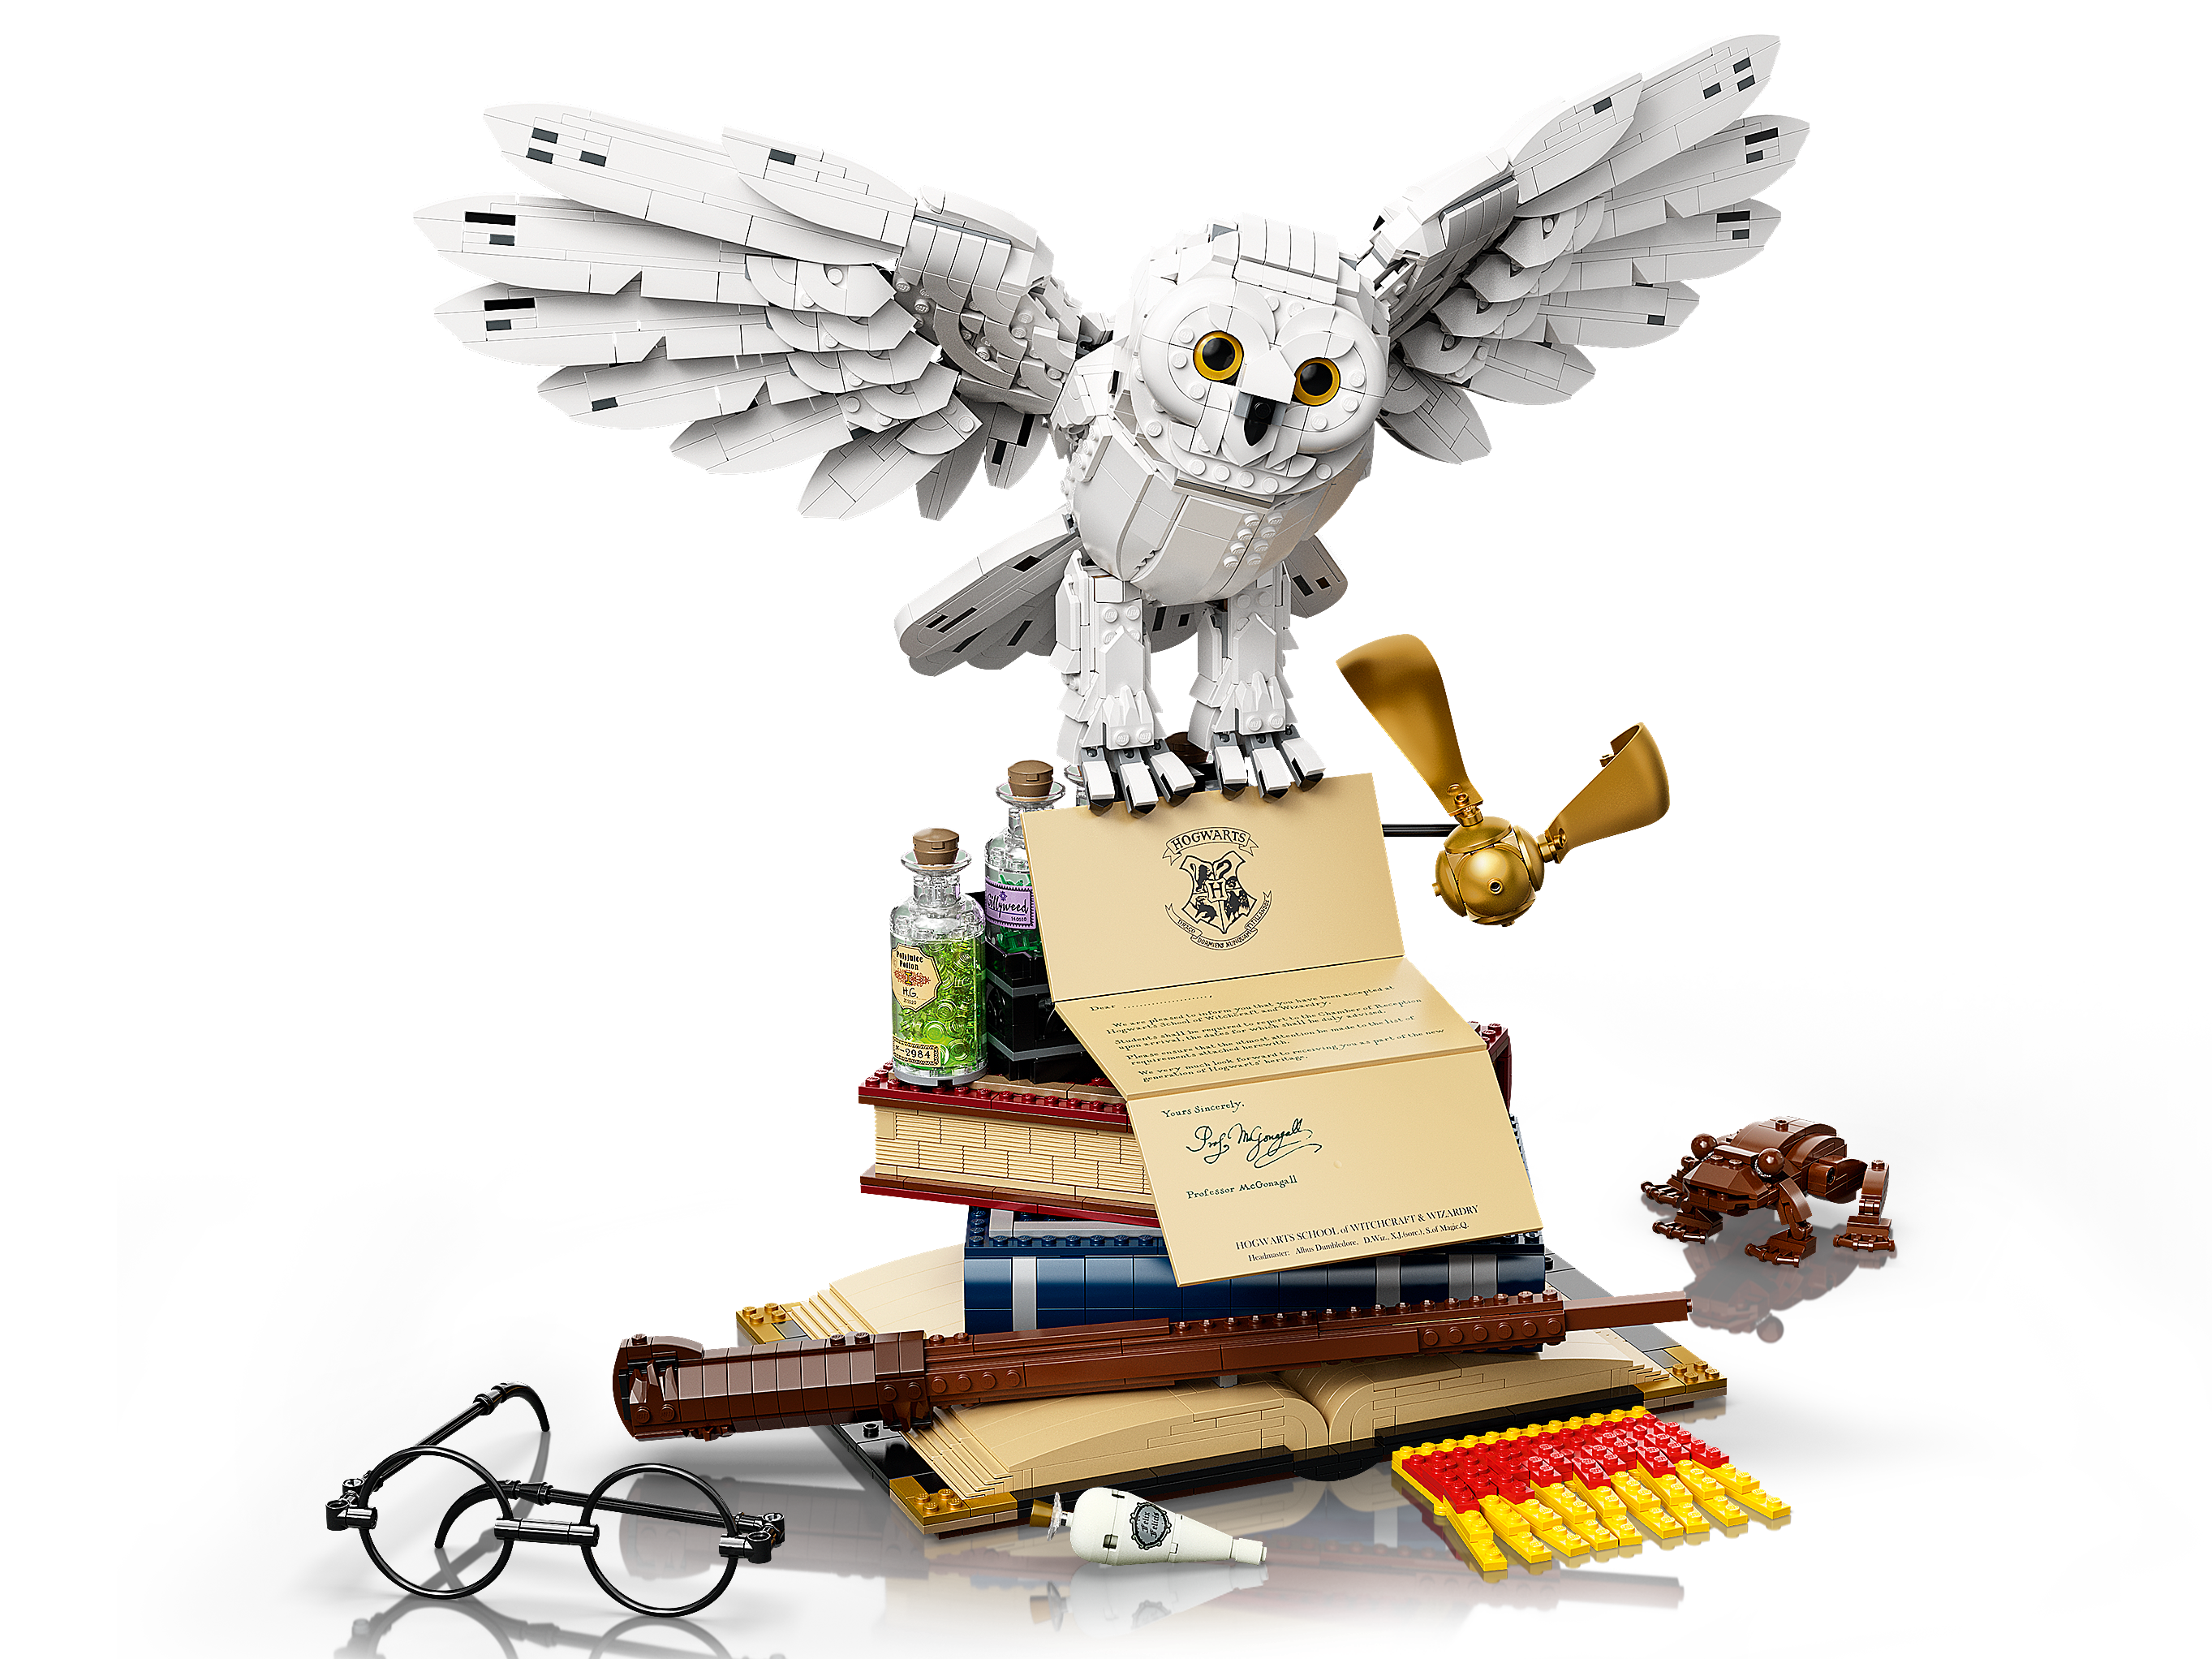 Lego Harry Potter El Libro Oficial